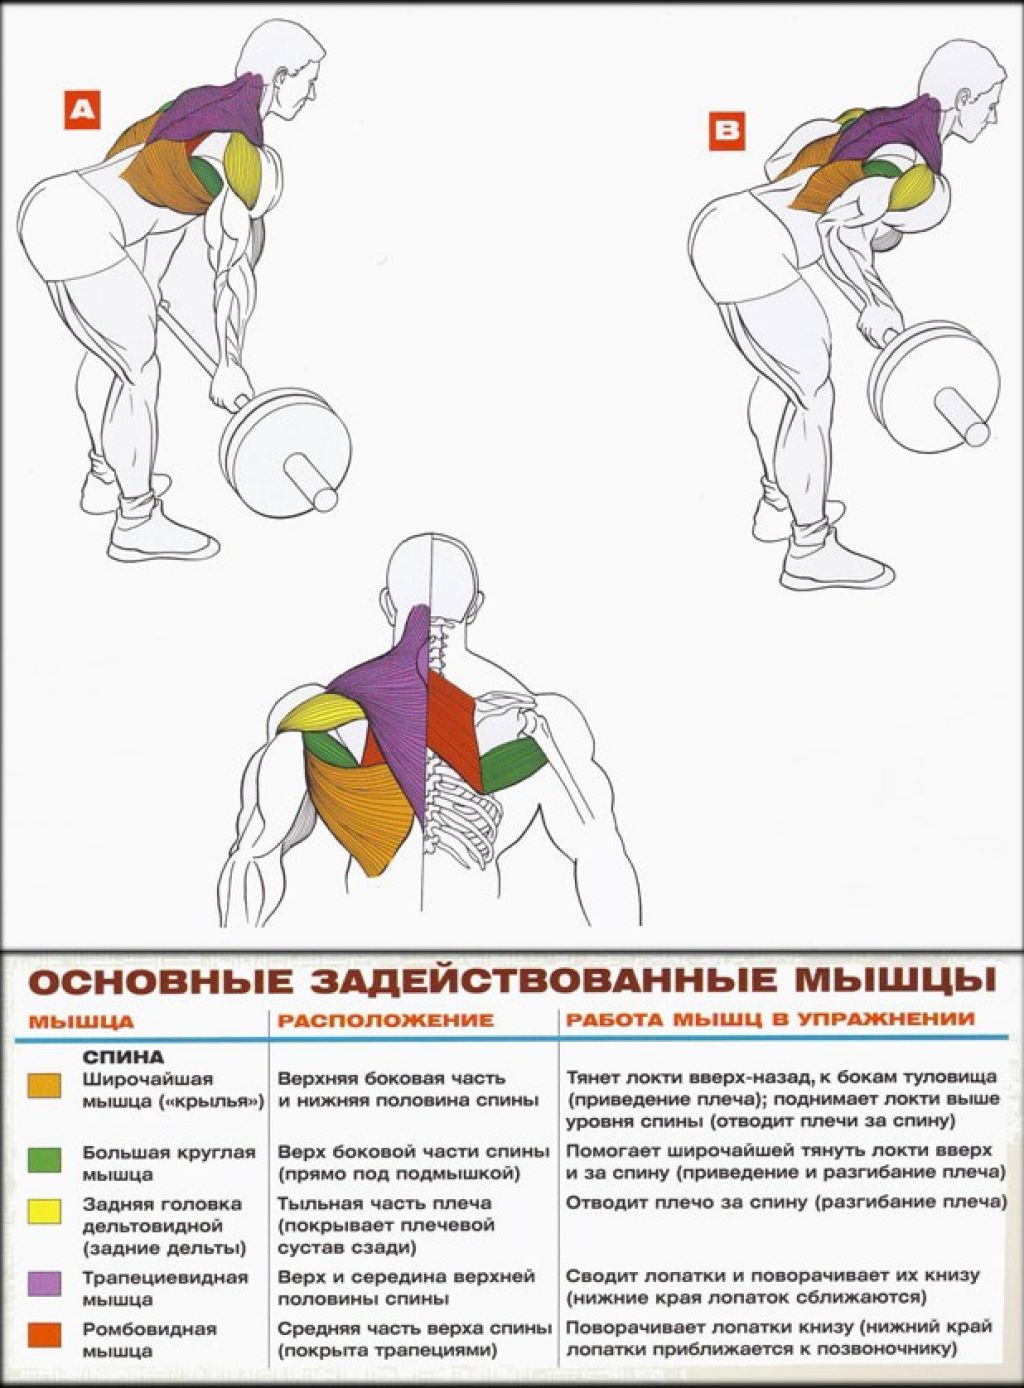 Тренировка спины программа. Упражнения для накачки трапециевидных мышц спины. Прокачка широчайшей мышцы спины гантелями. Упражнения для прокачки широчайших мышц спины со штангой. Прокачка крыльев штангой.